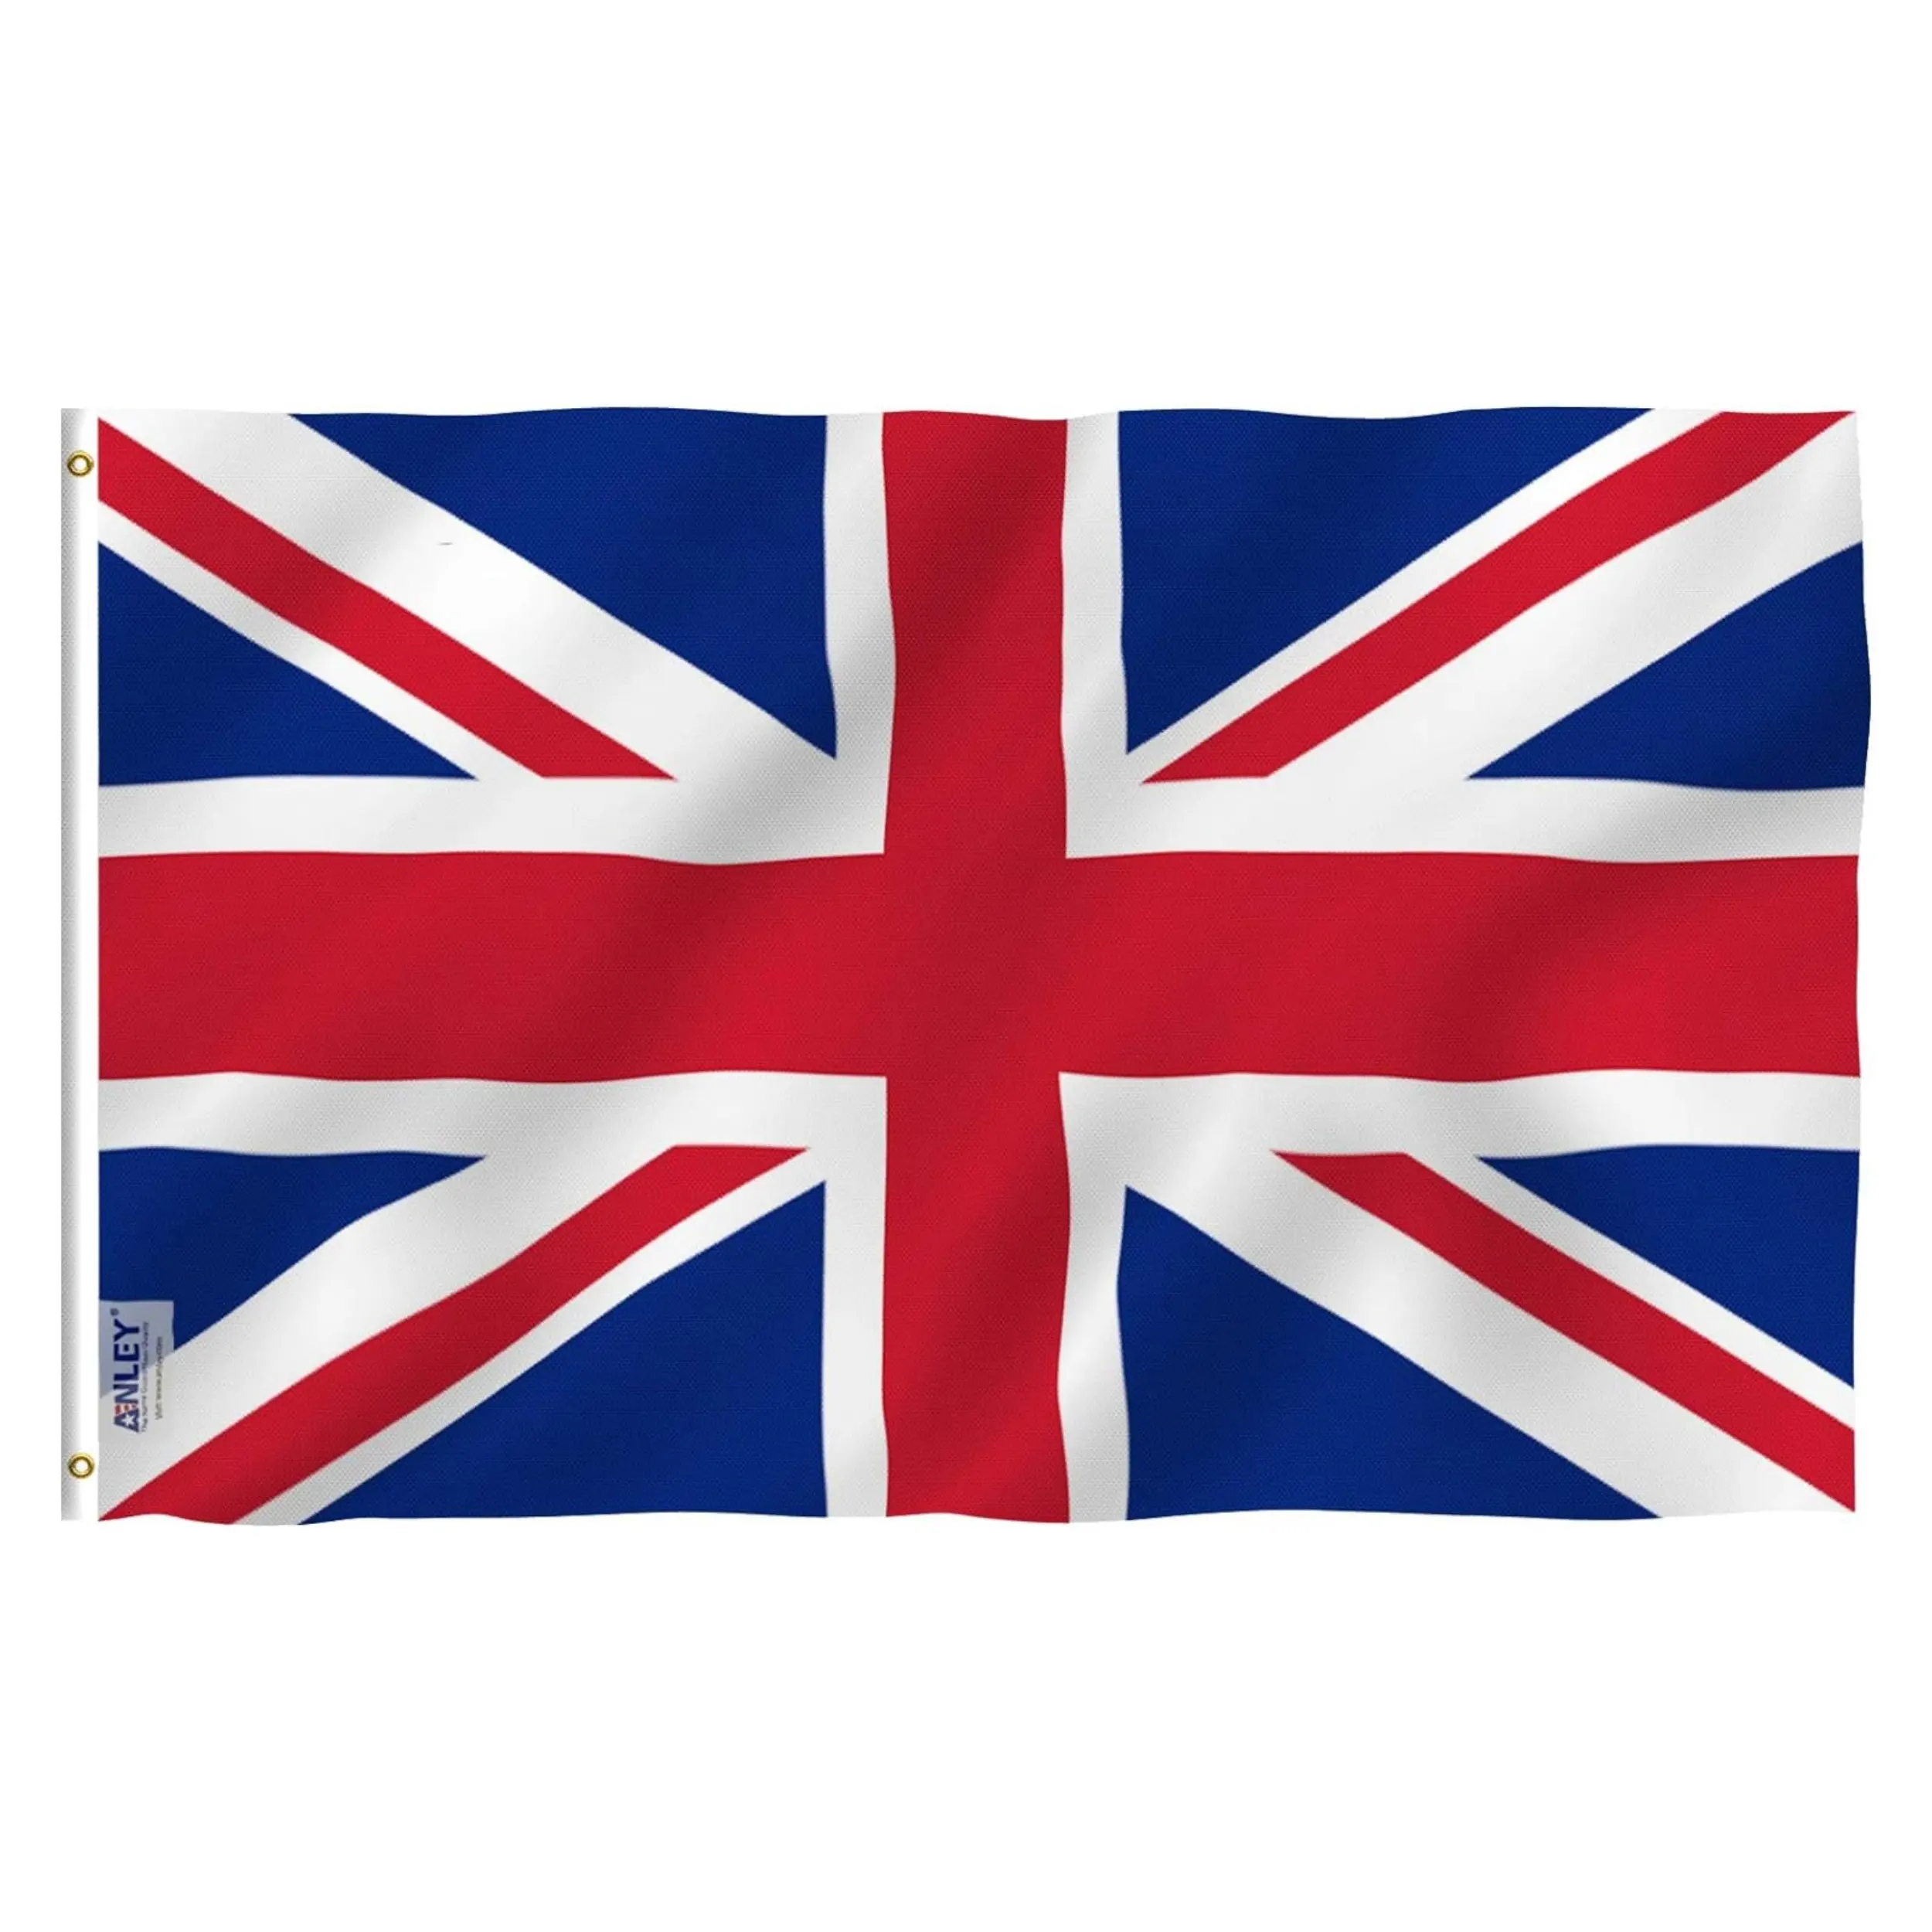 Groothandel 3X5 Ft Polyester Uk Britain Nationale Vlag Alle Landen Engeland Verenigd Koninkrijk Britse Vlag 3x5ft Union Jack Vlag